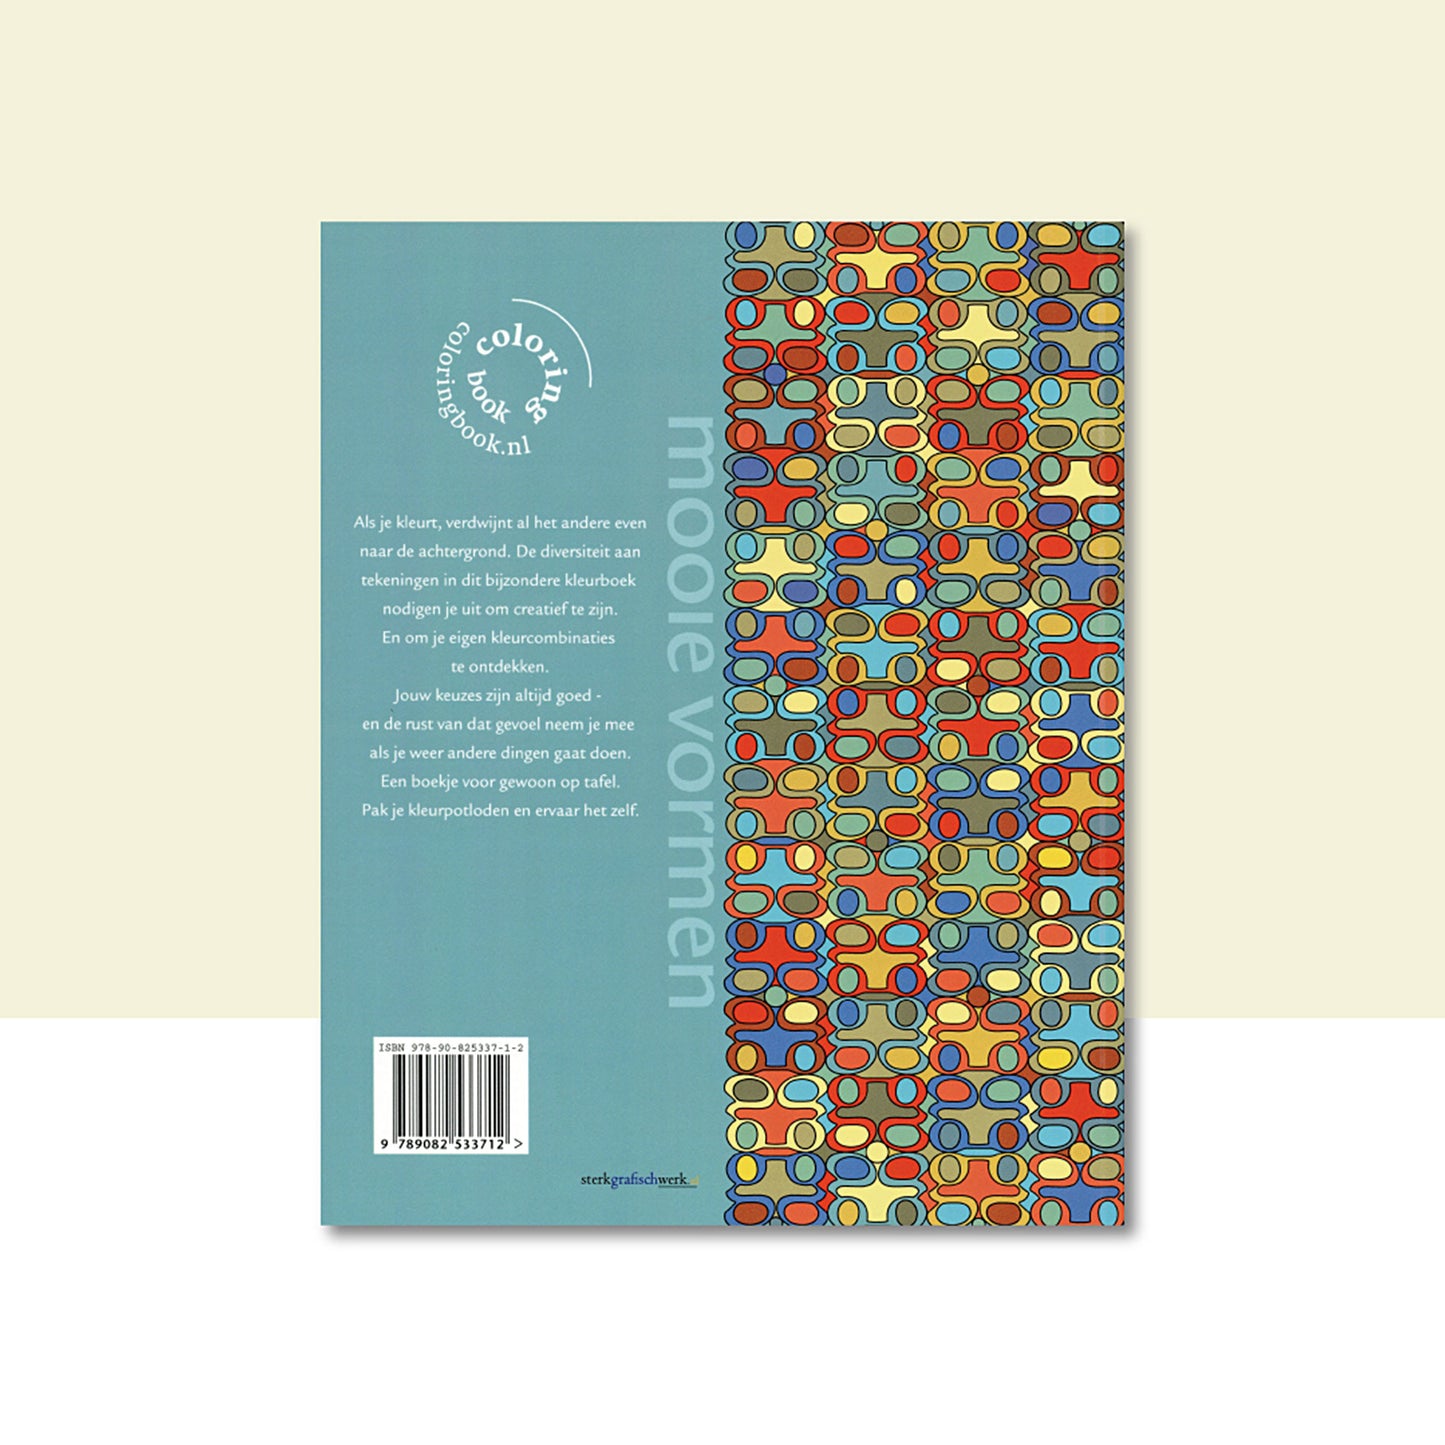 Productafbeelding, "modern dutch coloring book" nummer 2, met de achterzijde van het omslag in beeld